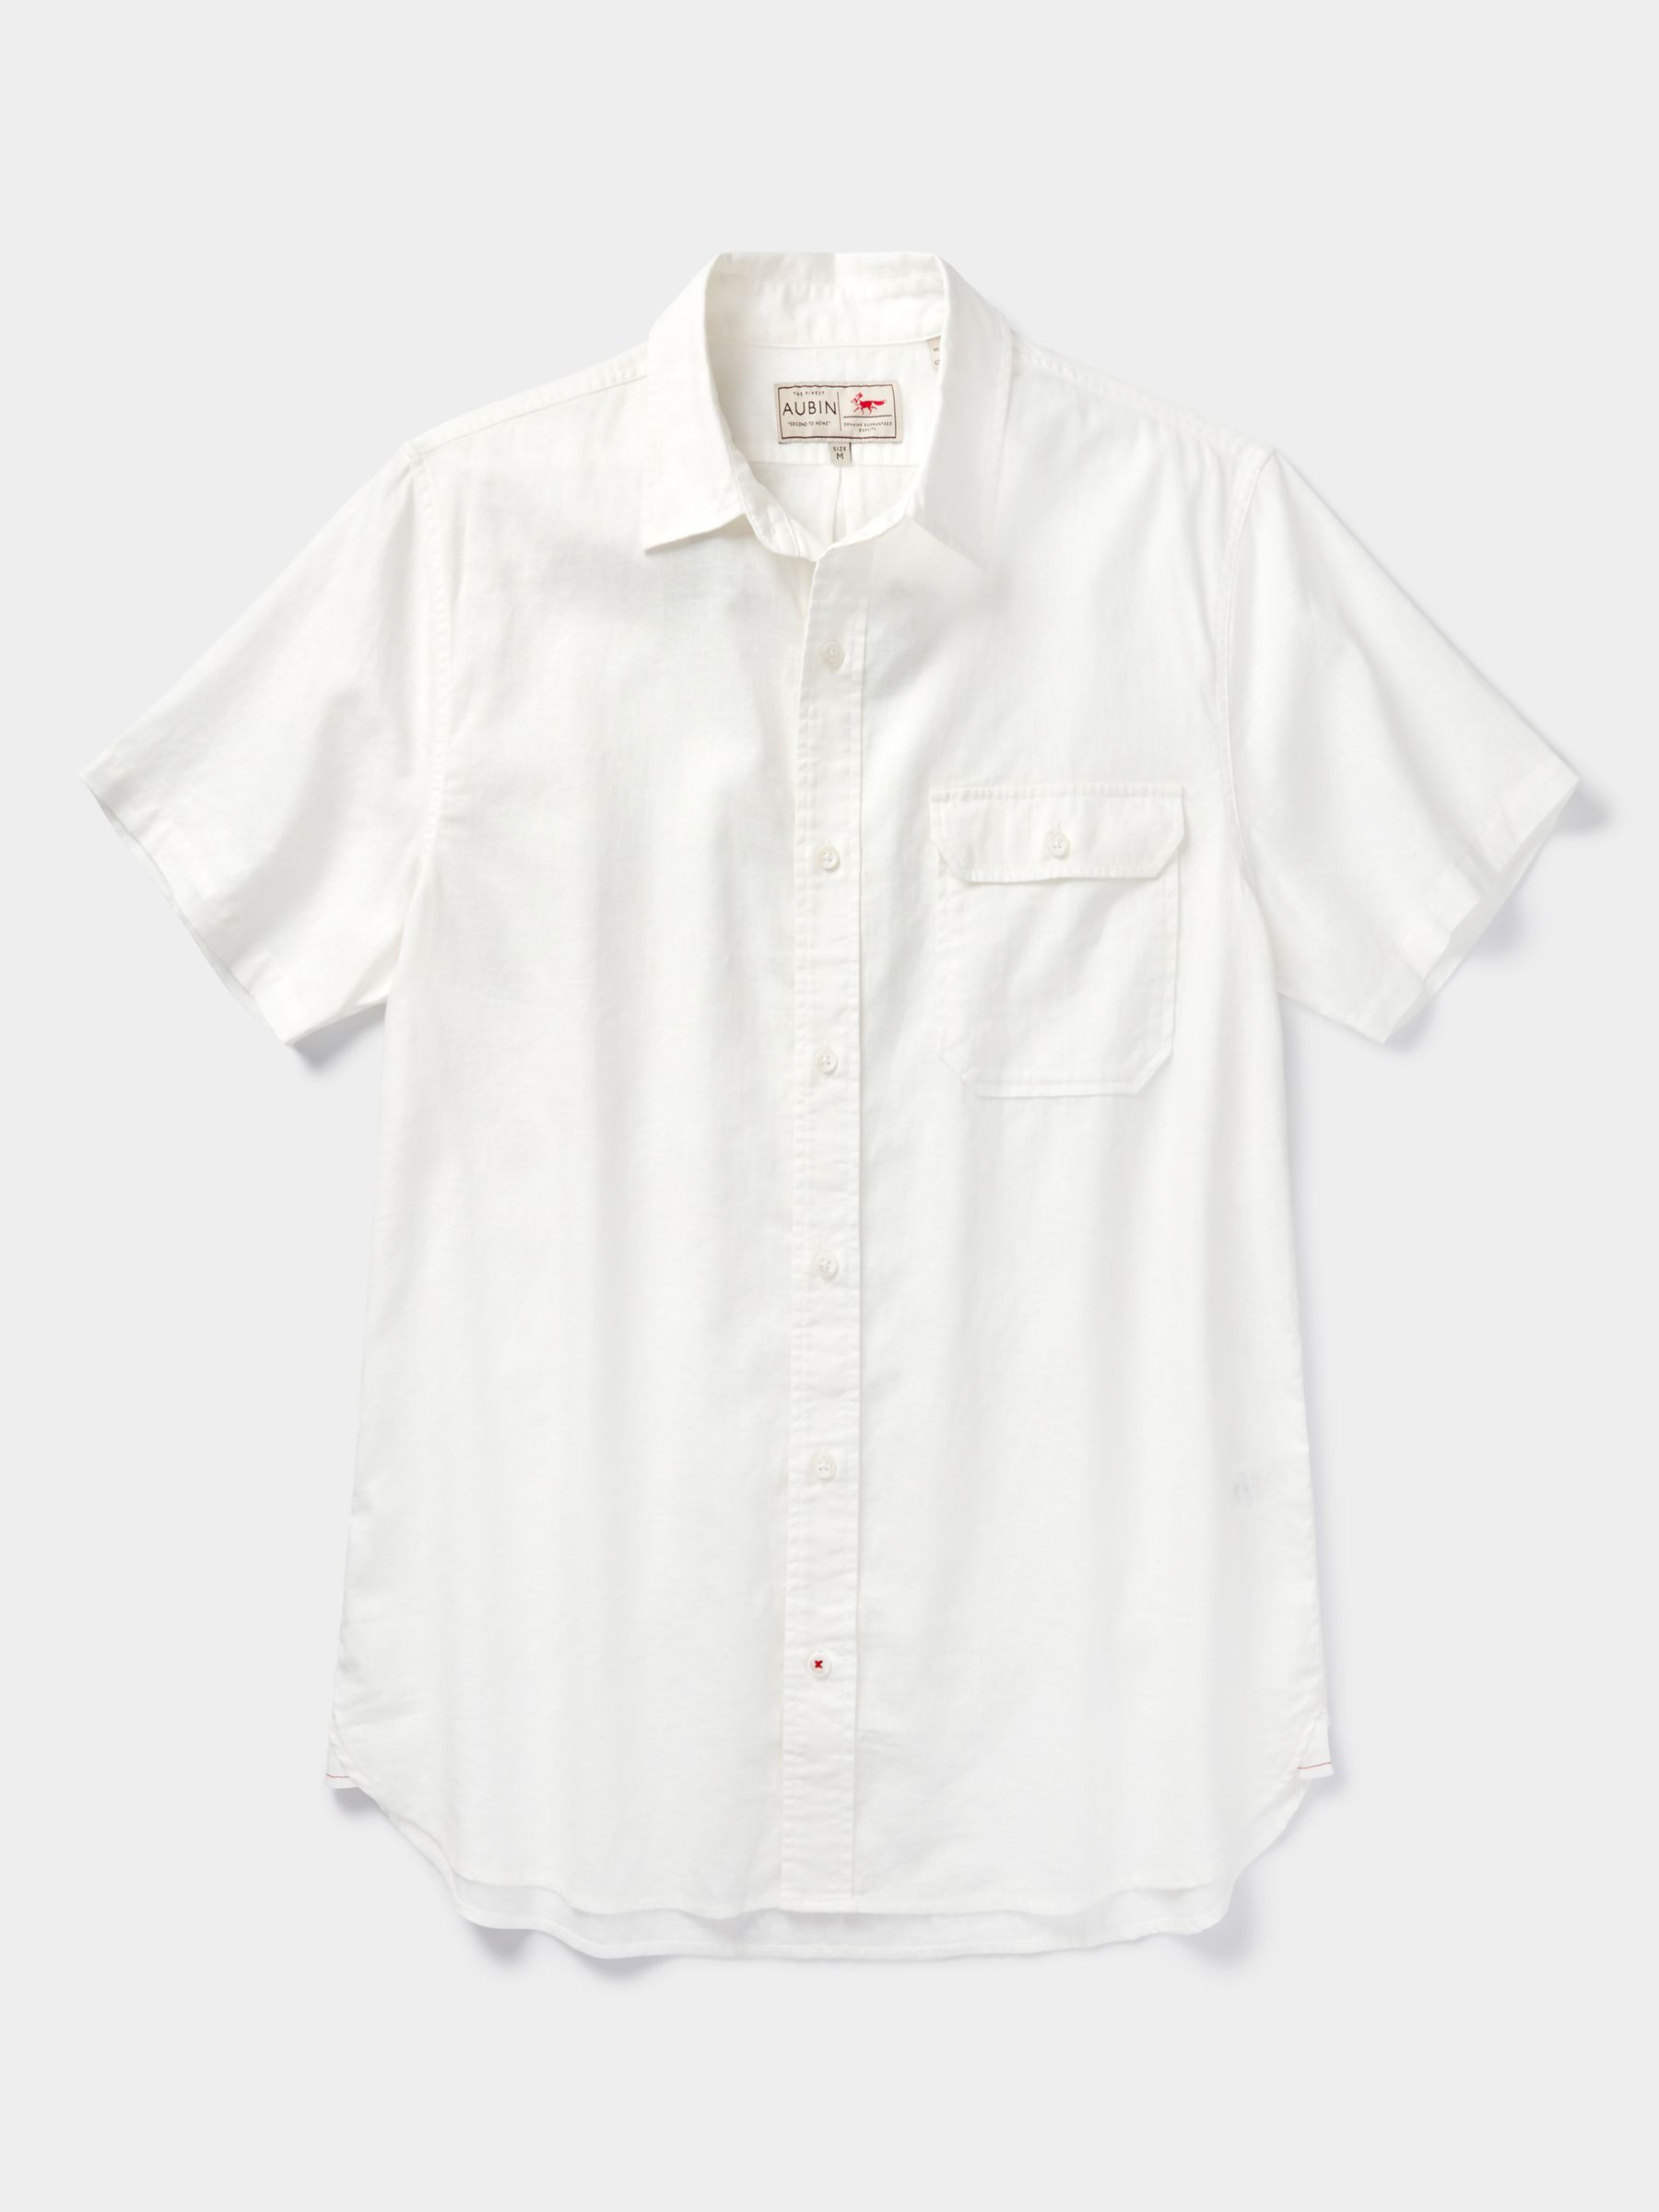 Buy Aubin Buckden Short Sleeve Shirt Online at johnlewis.com